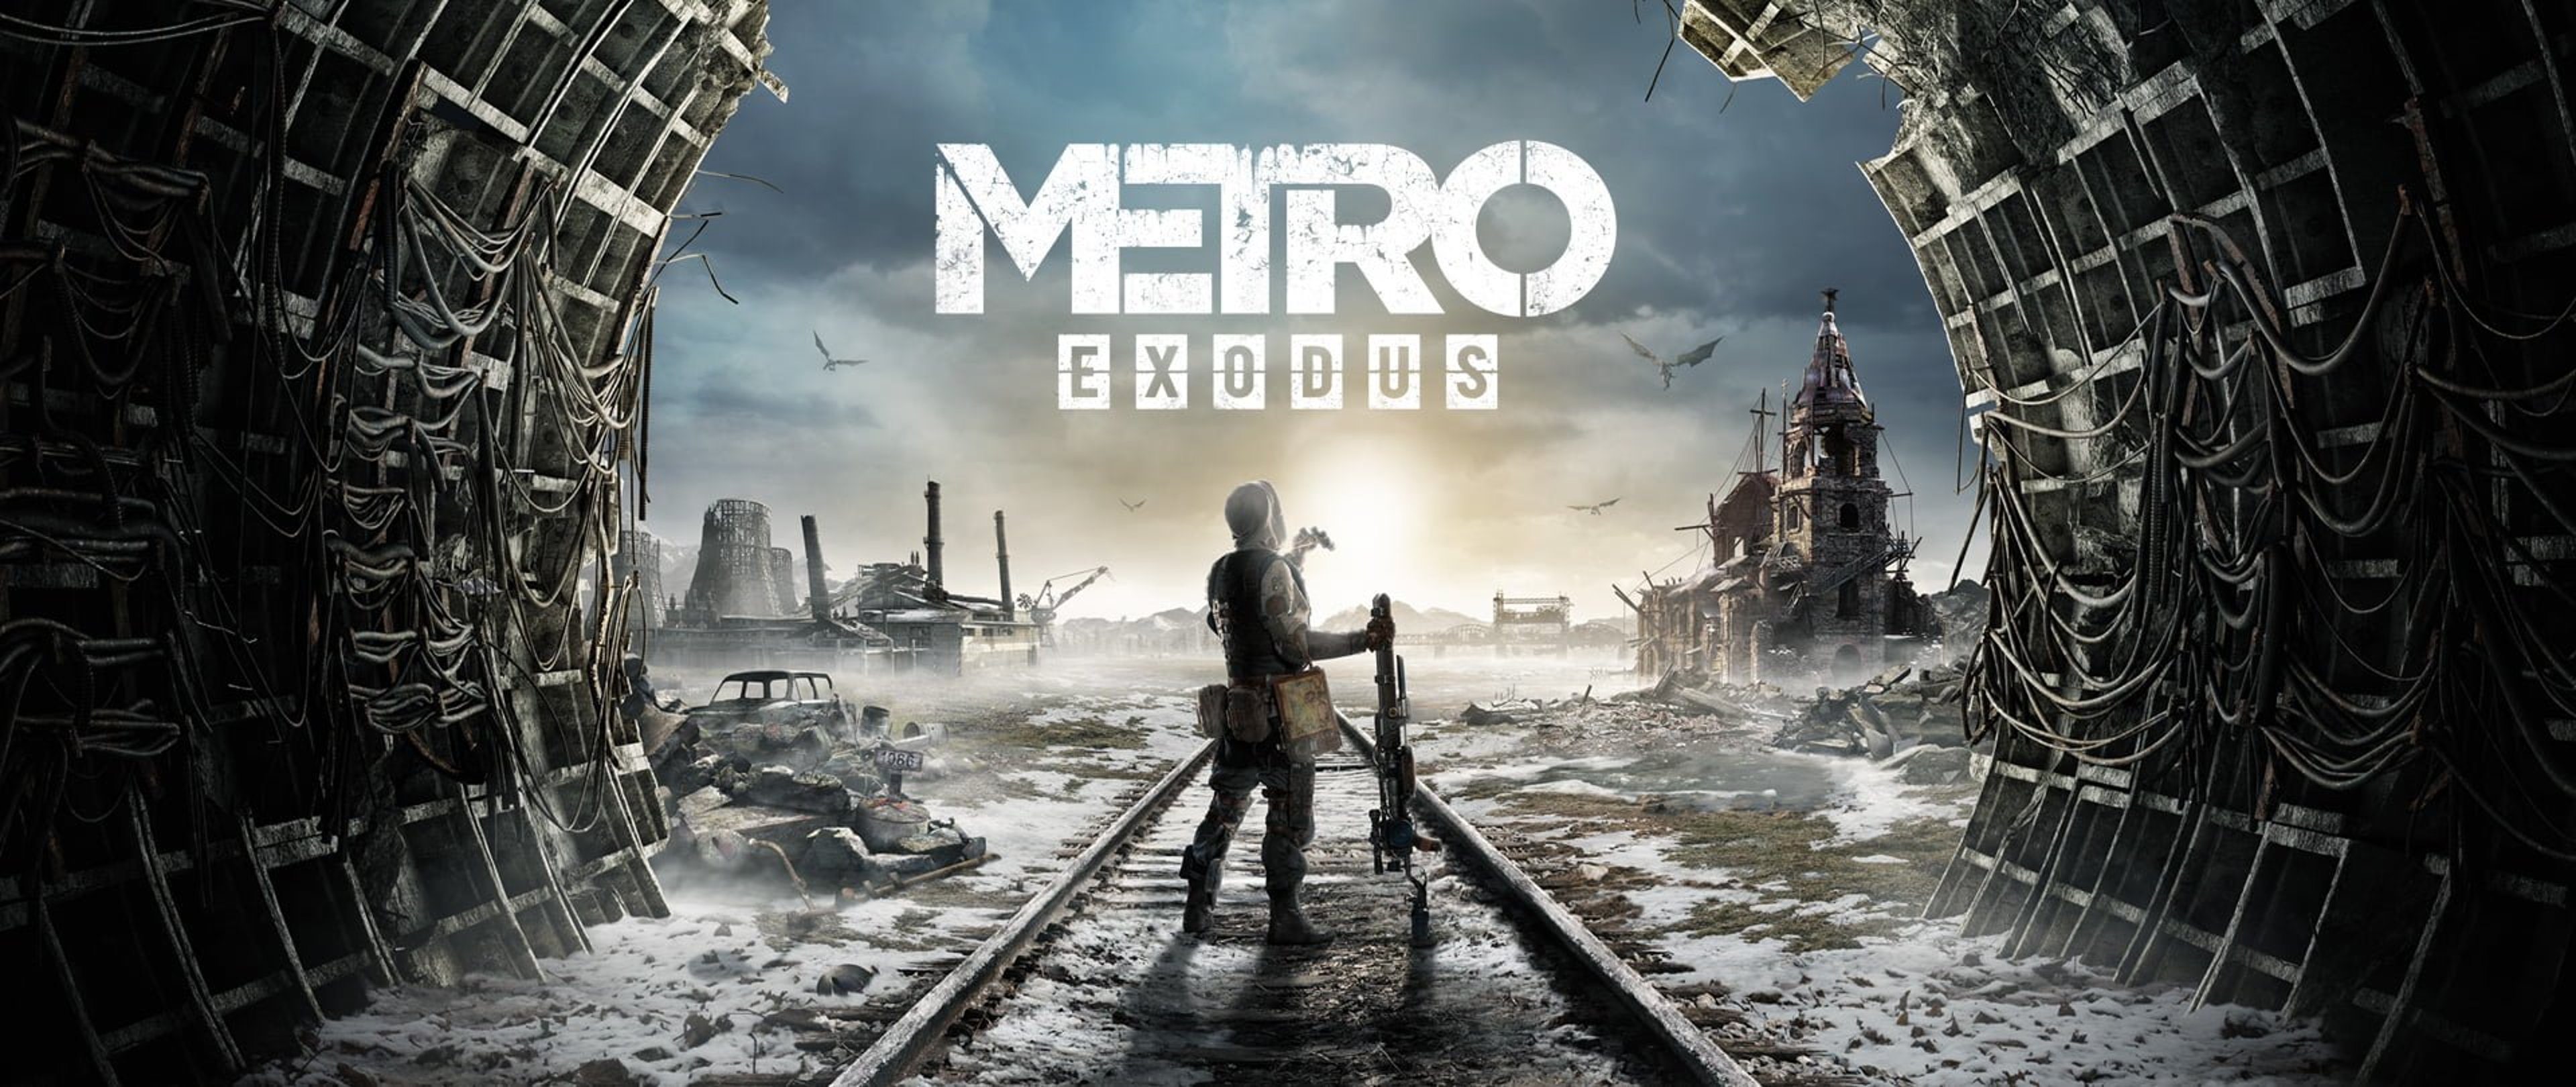 Metro Exodus, ottima la versione Pc grazie al ray tracing di Nvidia RTX